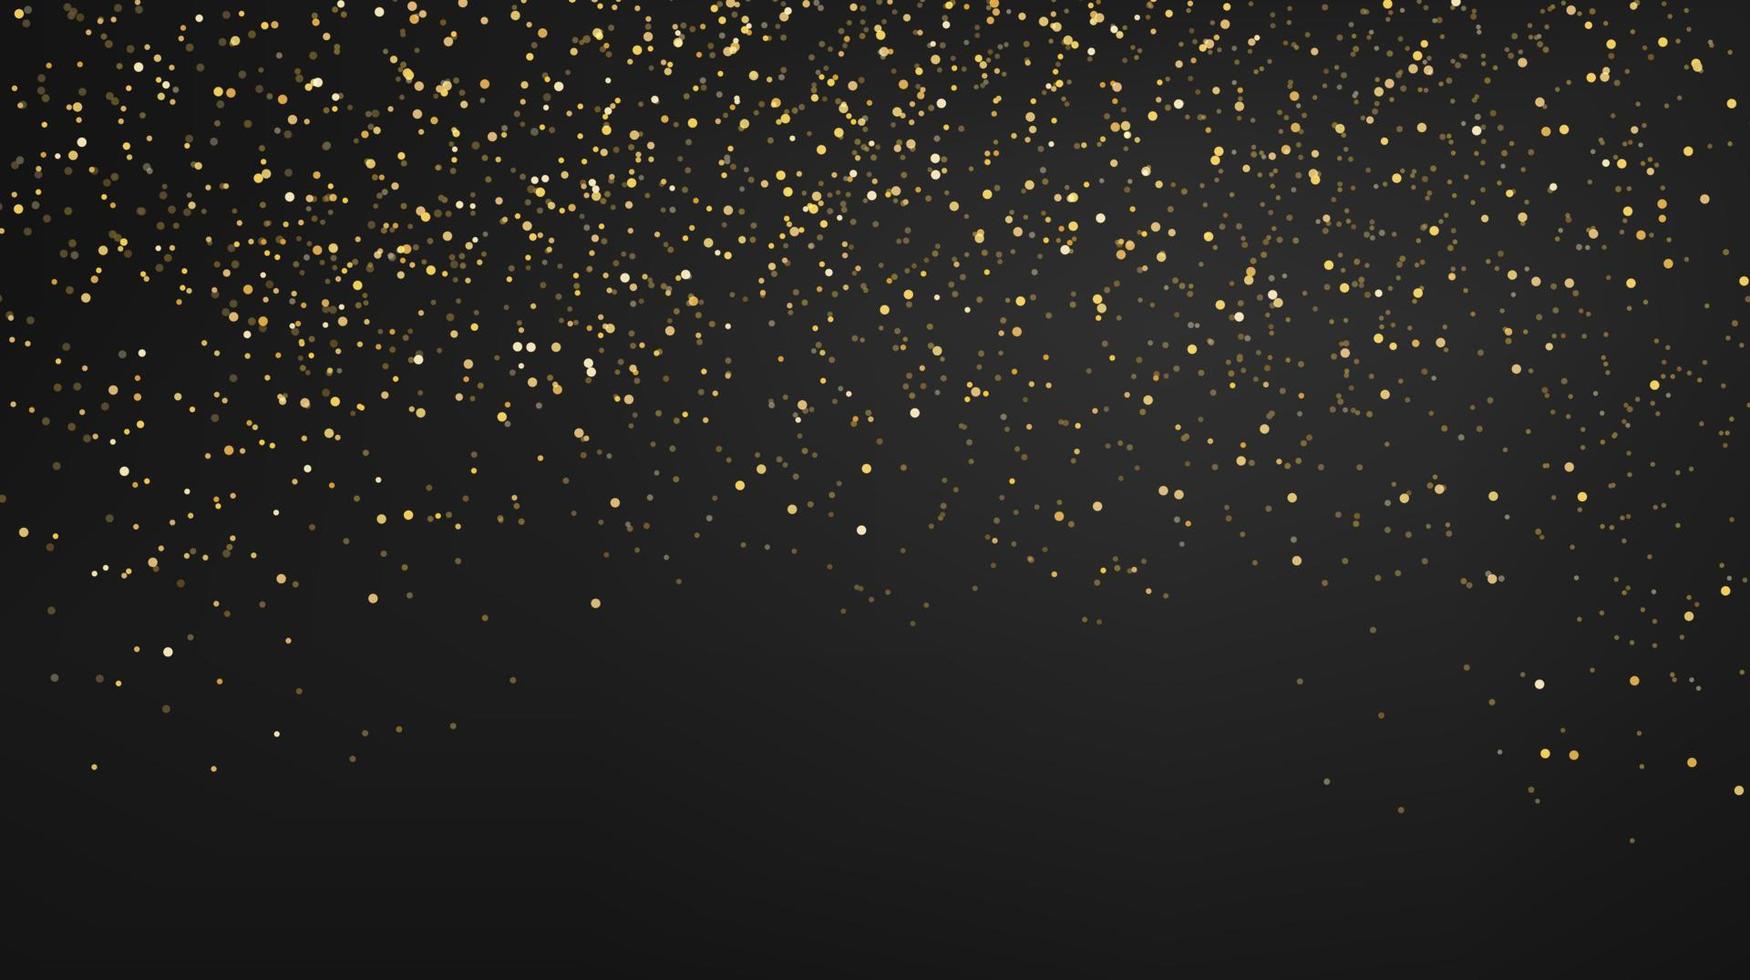 d'oro luccichio particelle su buio sfondo. d'oro splendente coriandoli spruzzatori effetto. festivo design per Natale, nuovo anno o vacanza. vettore illustrazione